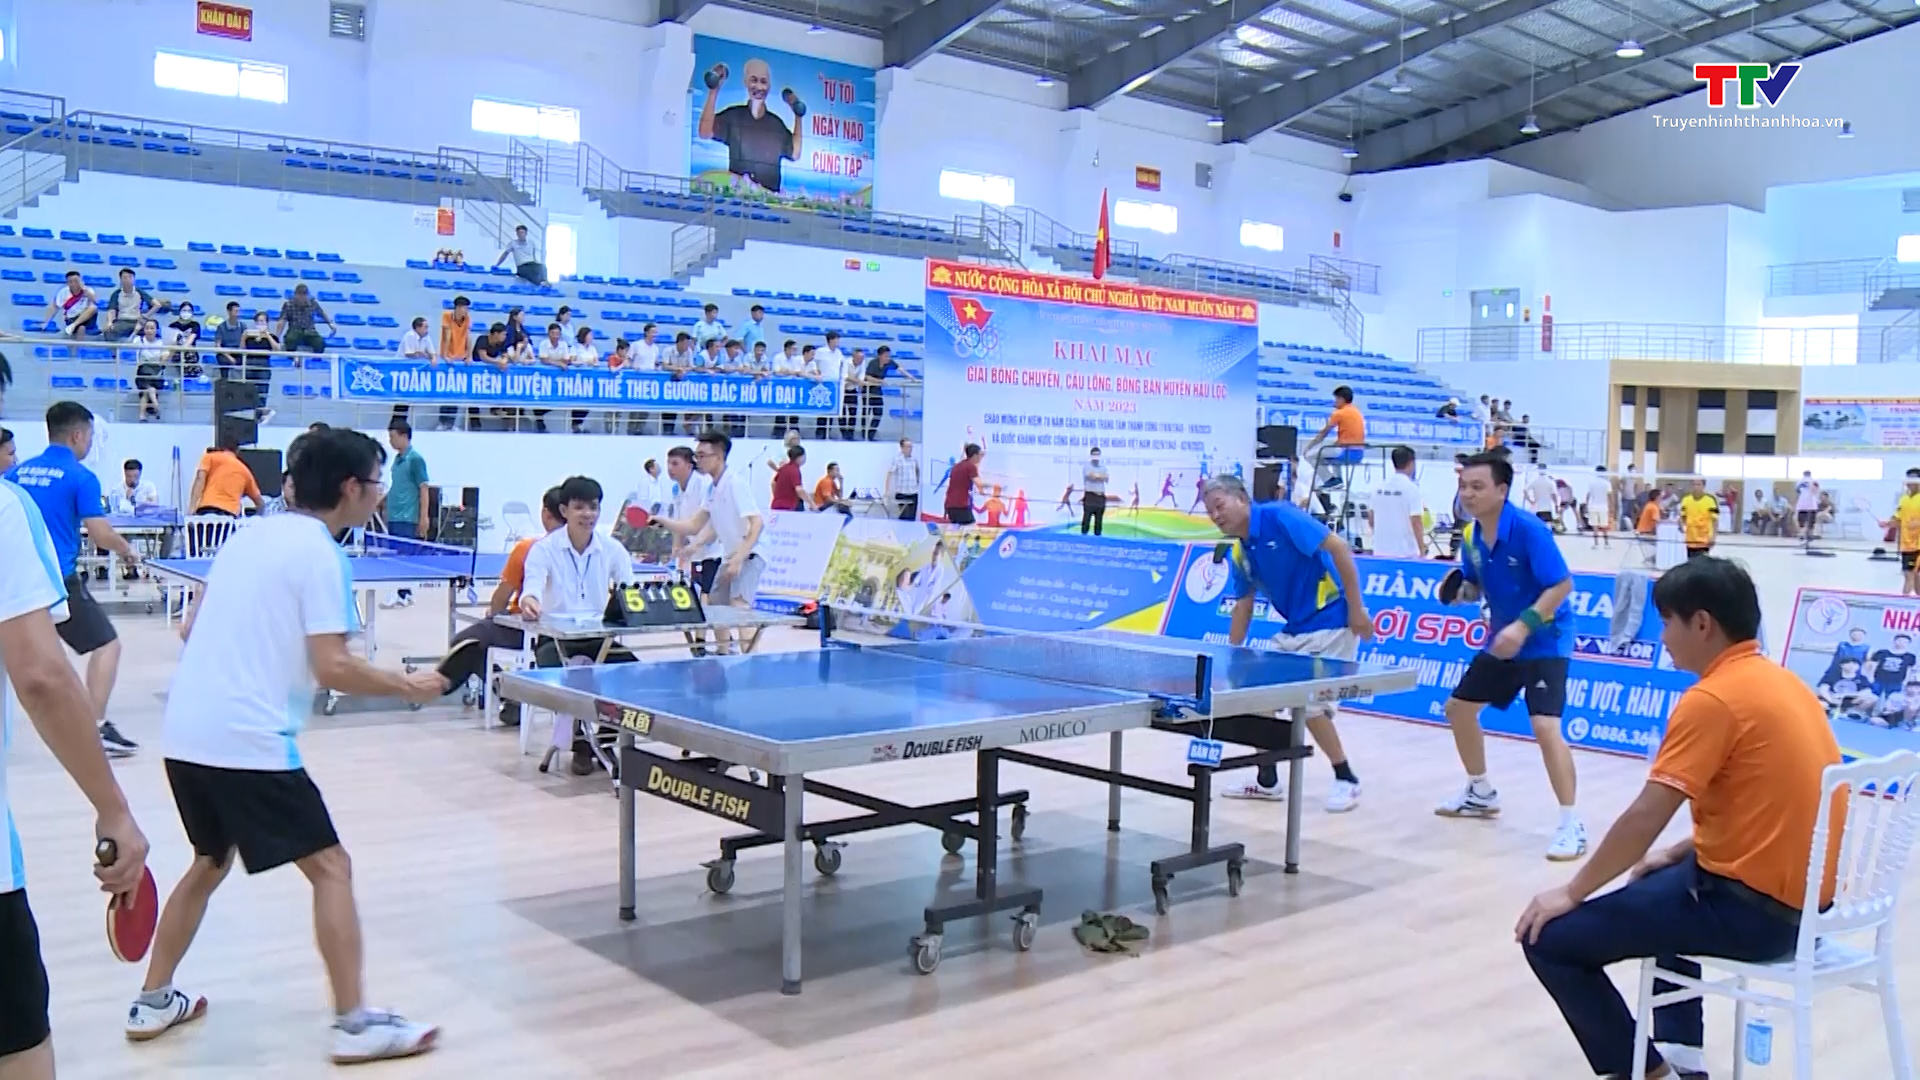 Nhà thi đấu đa năng huyện Hậu Lộc được đưa vào sử dụng tạo được sự phấn khởi trong Nhân dân - Ảnh 3.